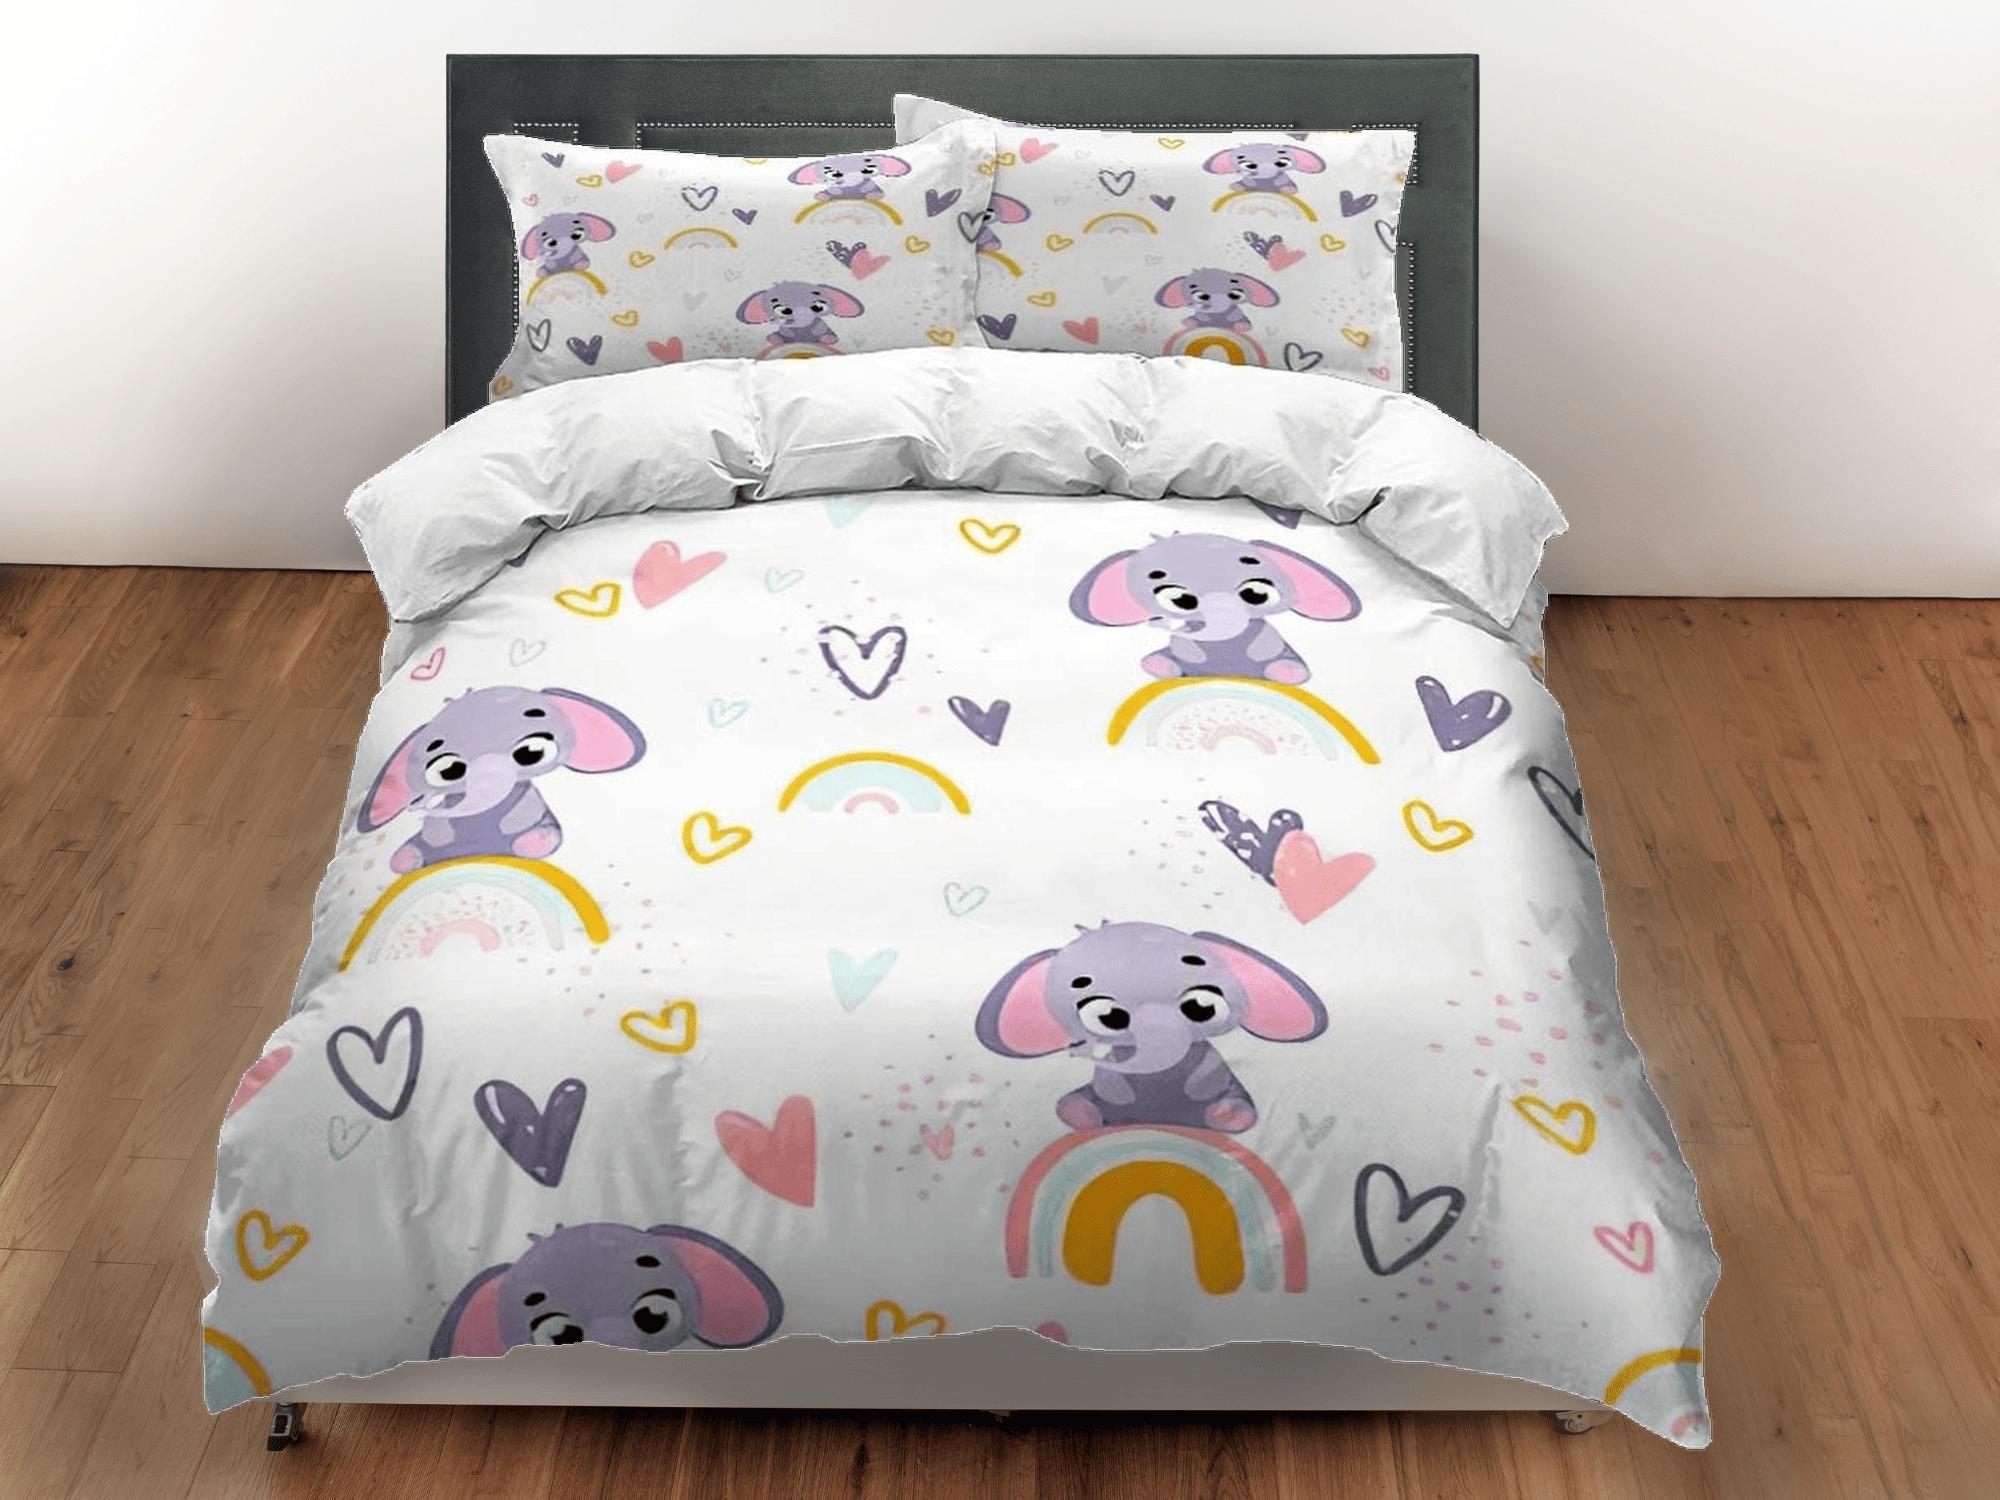 daintyduvet Boho rainbow pattern elephant bedding cute duvet cover set, kids bedding full, nursery bed decor, elephant baby shower, toddler bedding